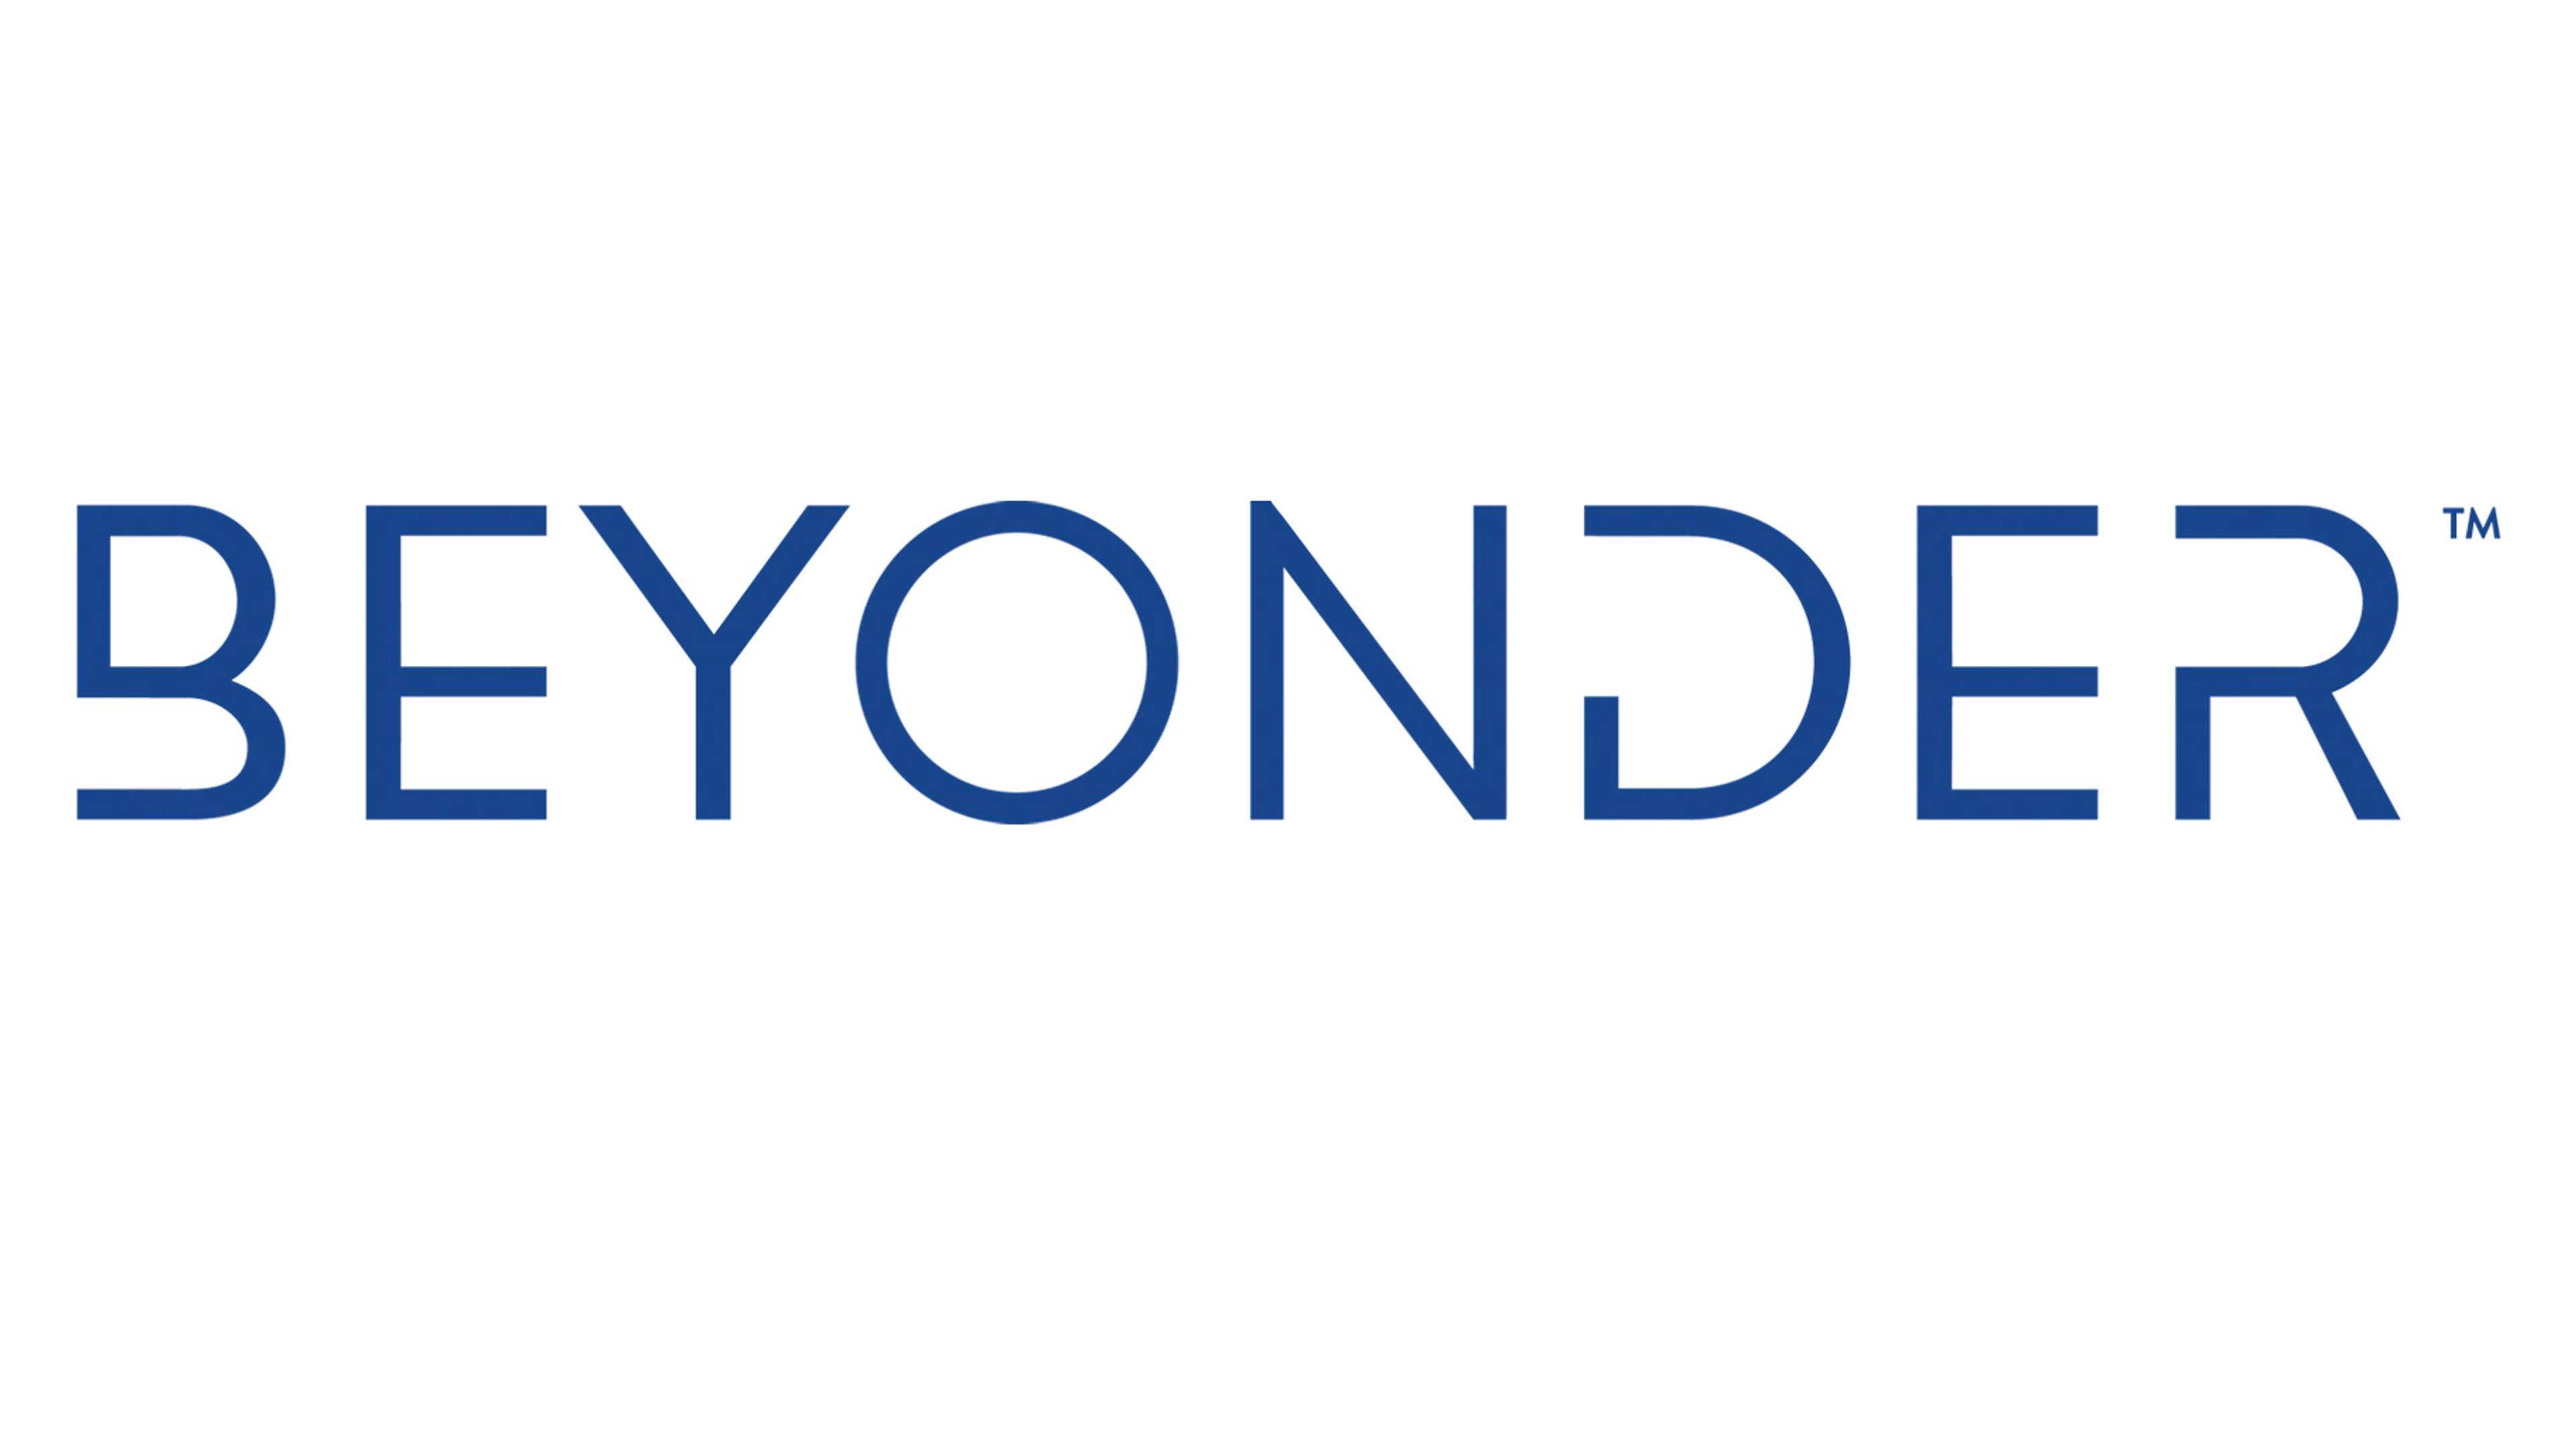 Beyonder logo